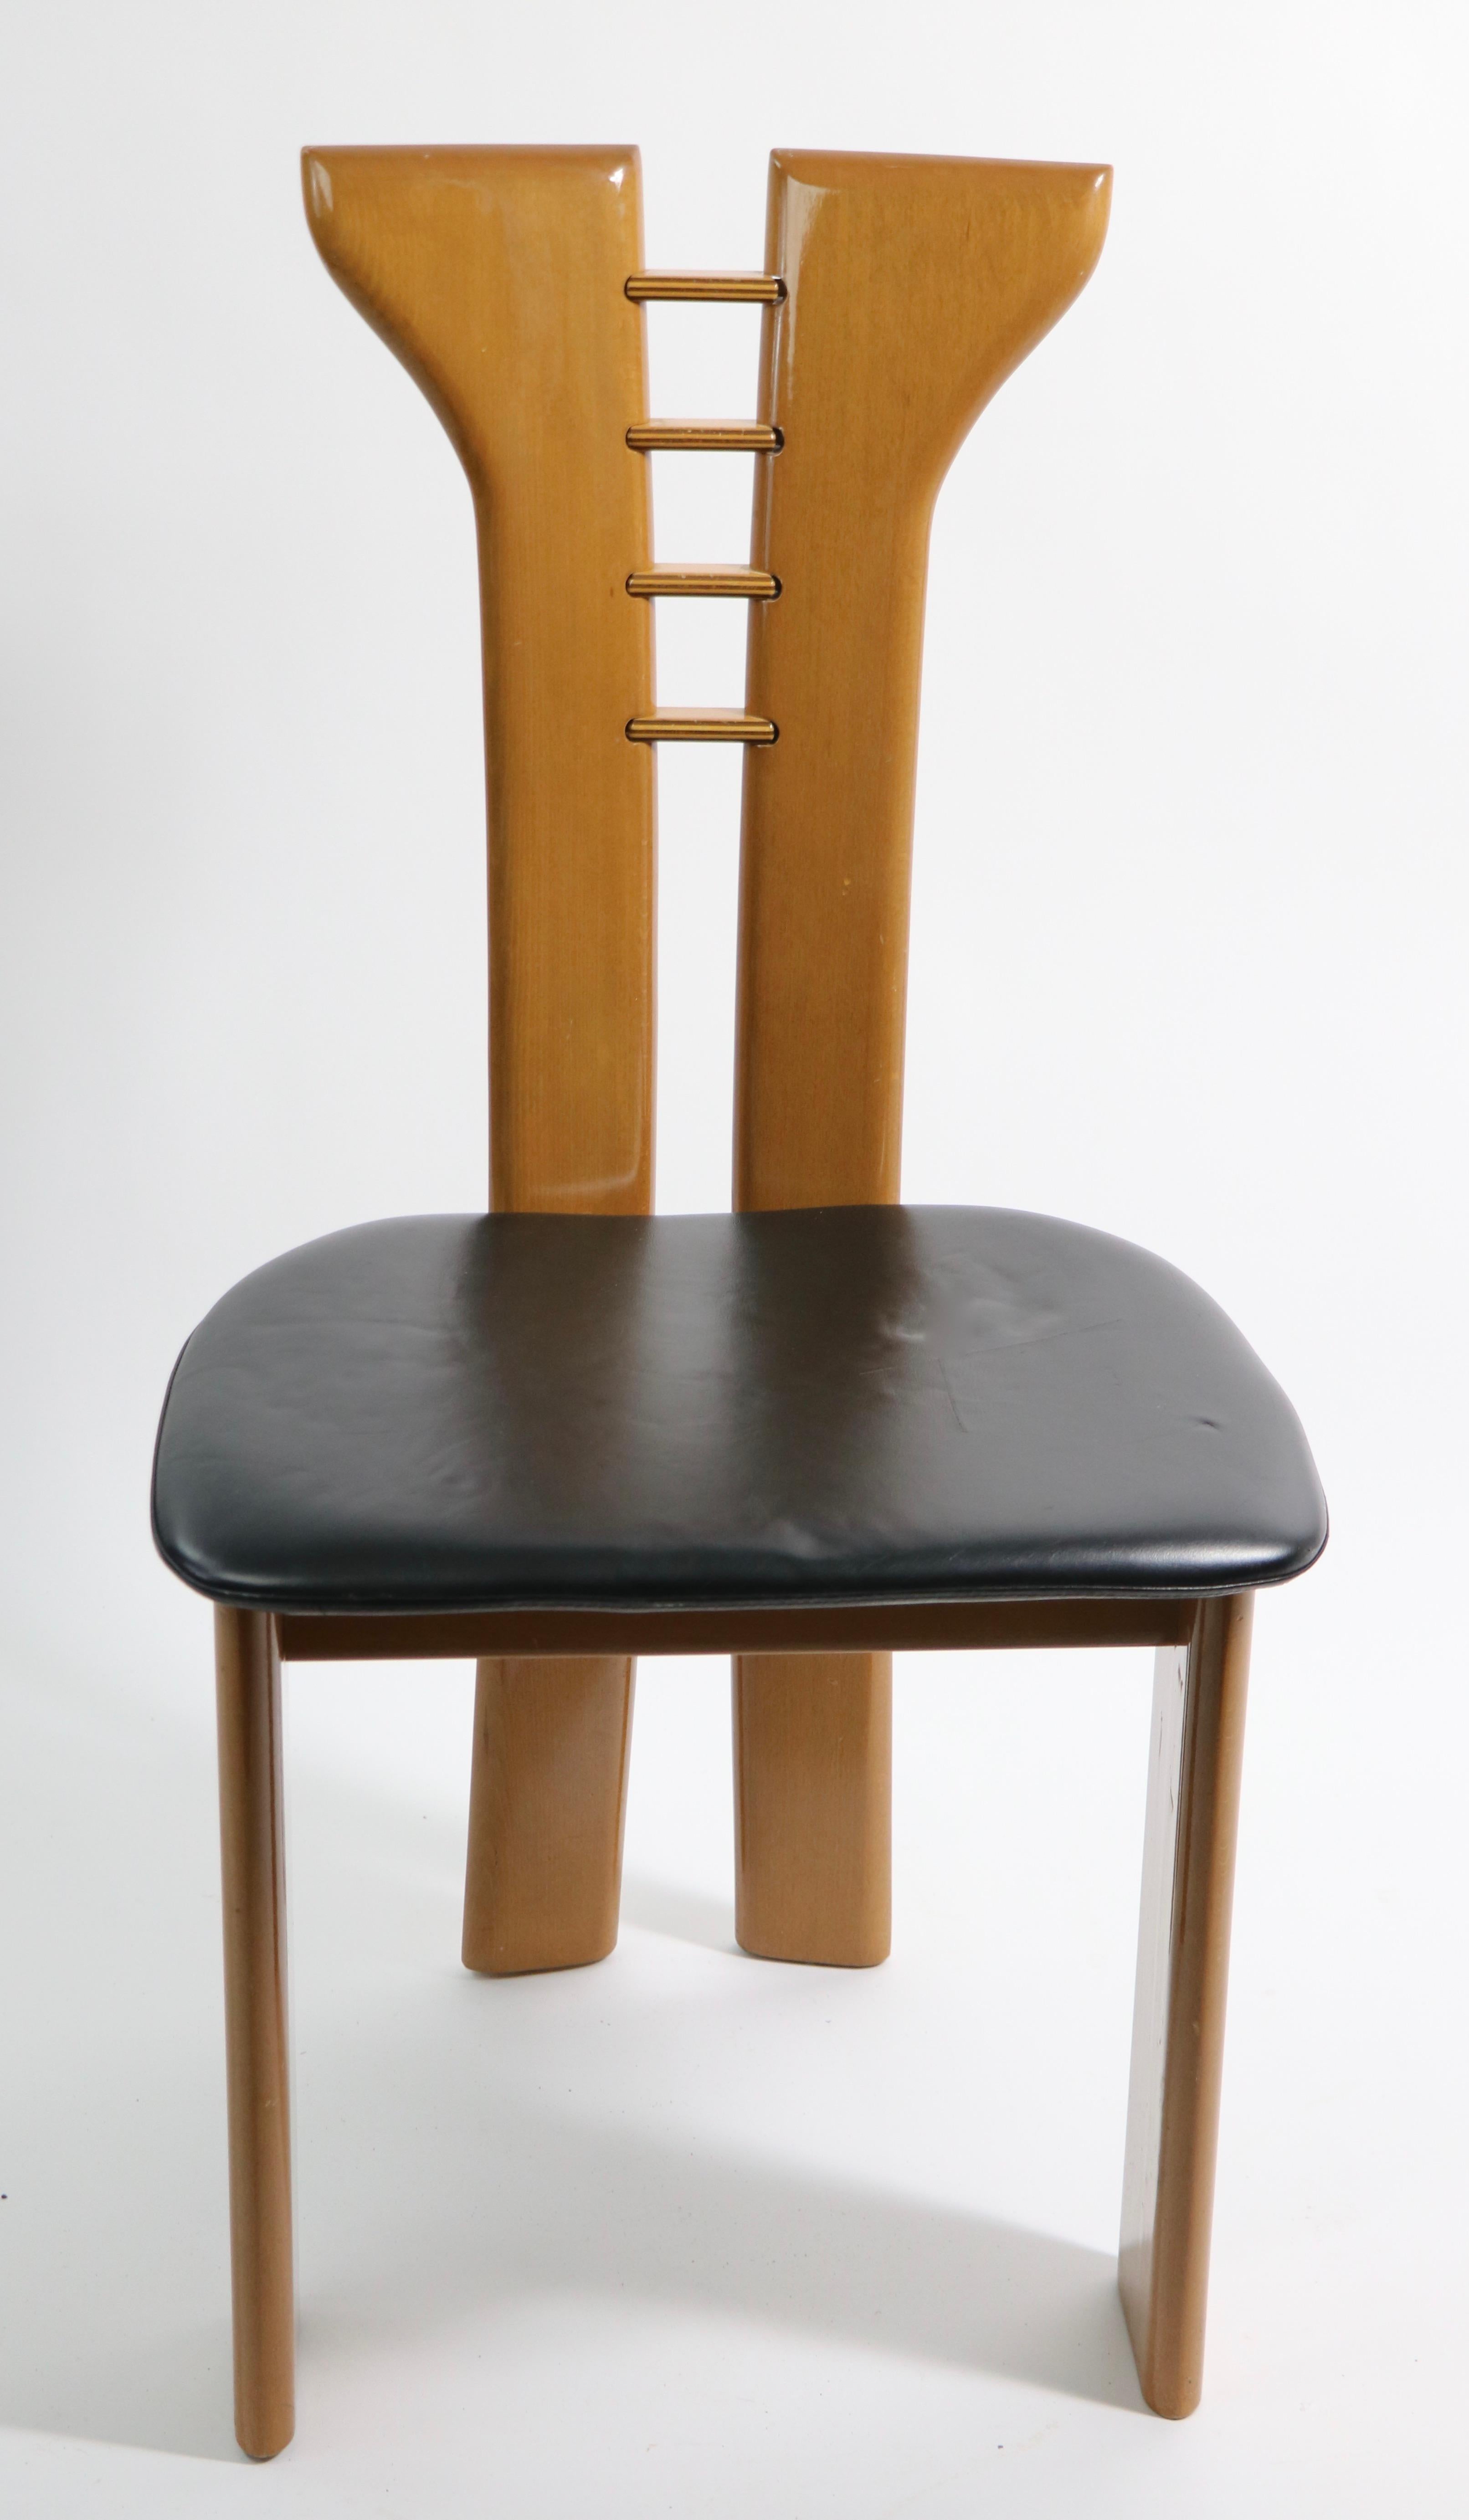 Chaise d'appoint ou de salle à manger post-moderne de style chic, souvent attribuée à Pierre Cardin, nous pensons qu'il s'agit en fait de Maurice Villency. Cet exemplaire est en très bon état d'origine, le siège en cuir présente une légère usure